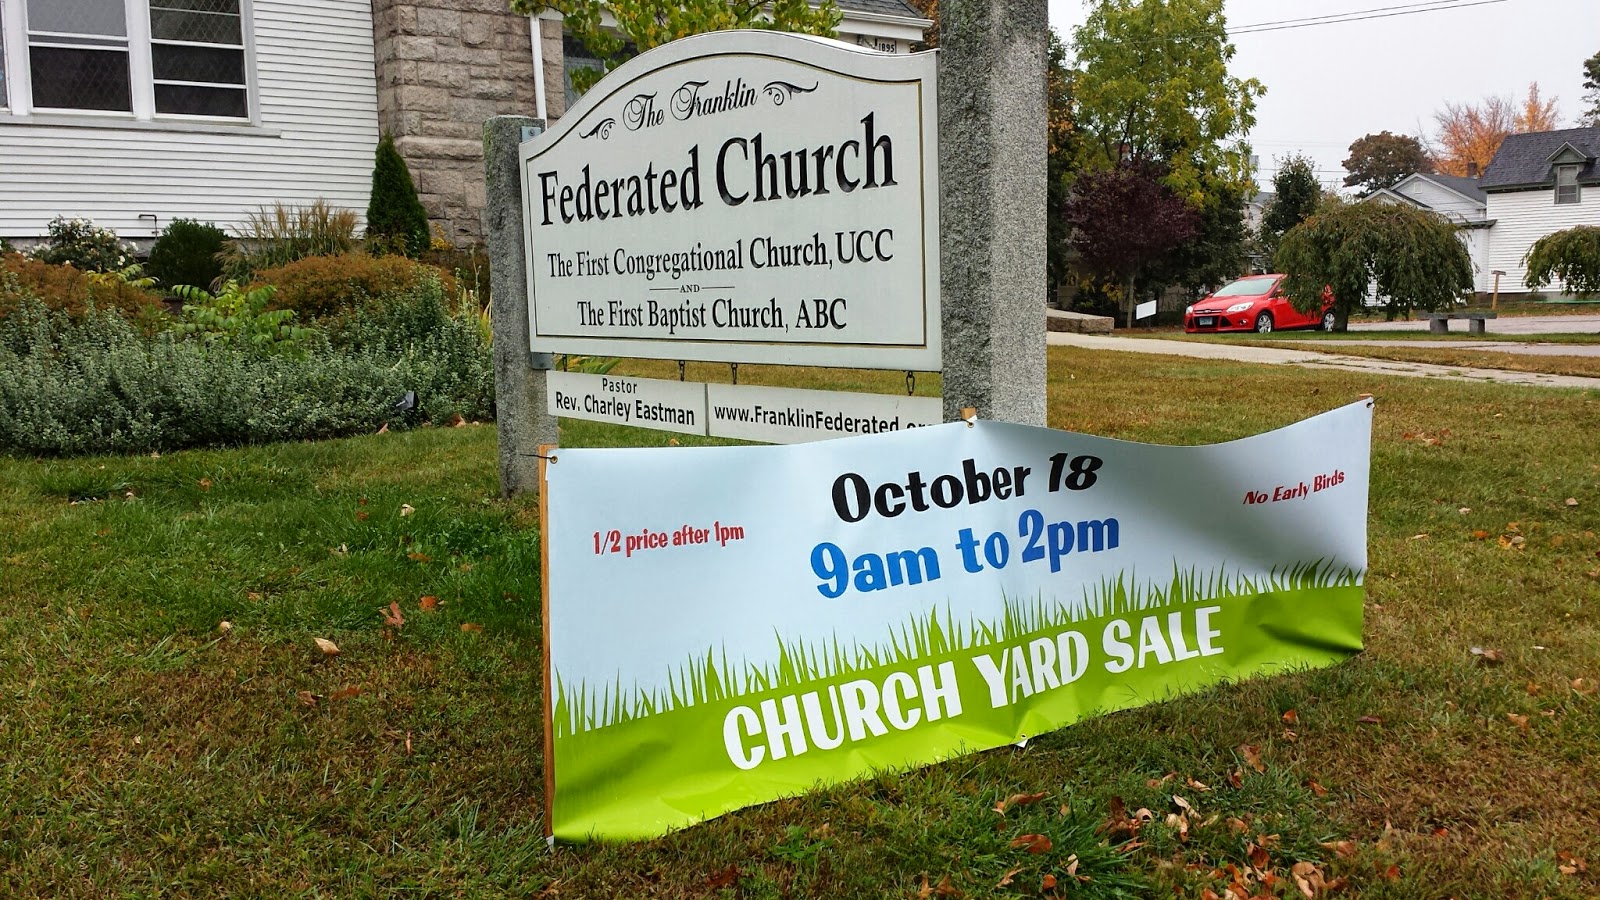 Franklin Federated Church - annual yard sale - Oct 18